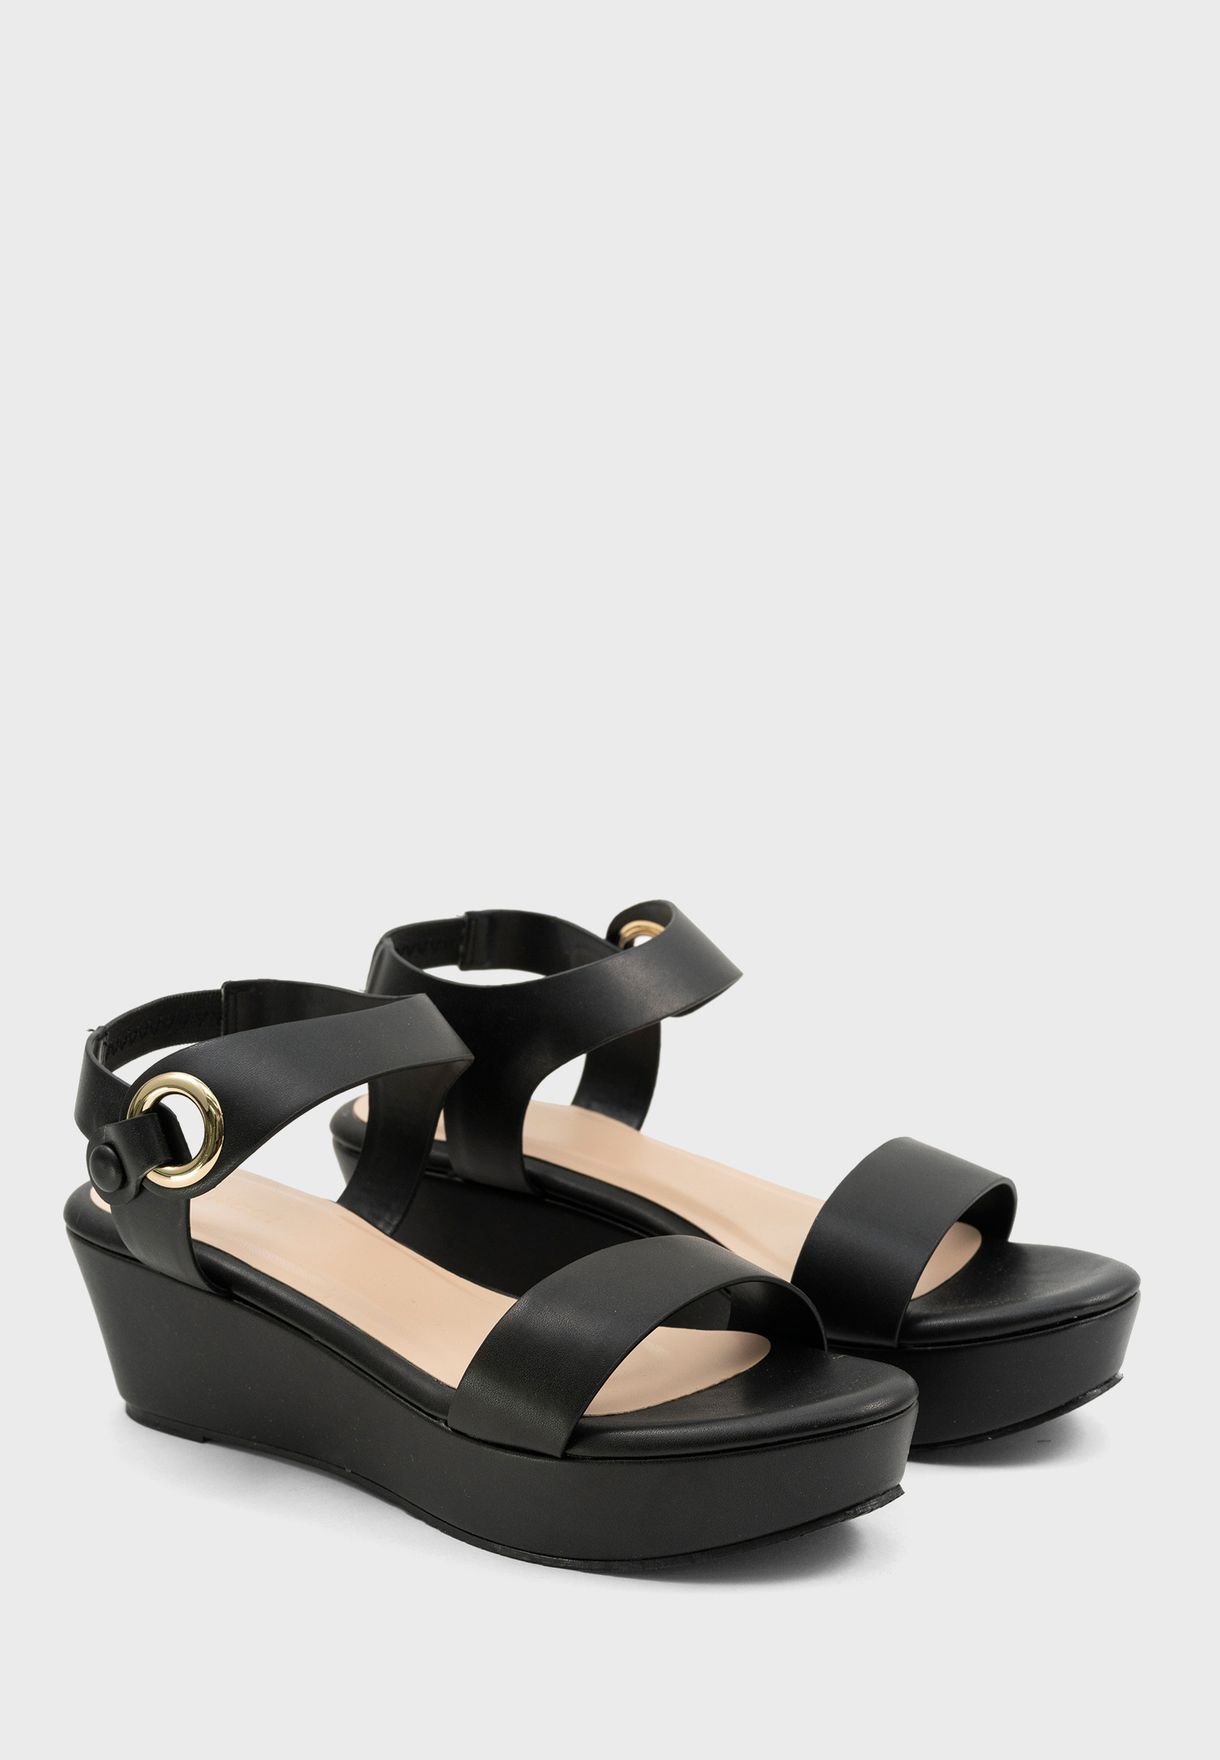 black strap wedge heels